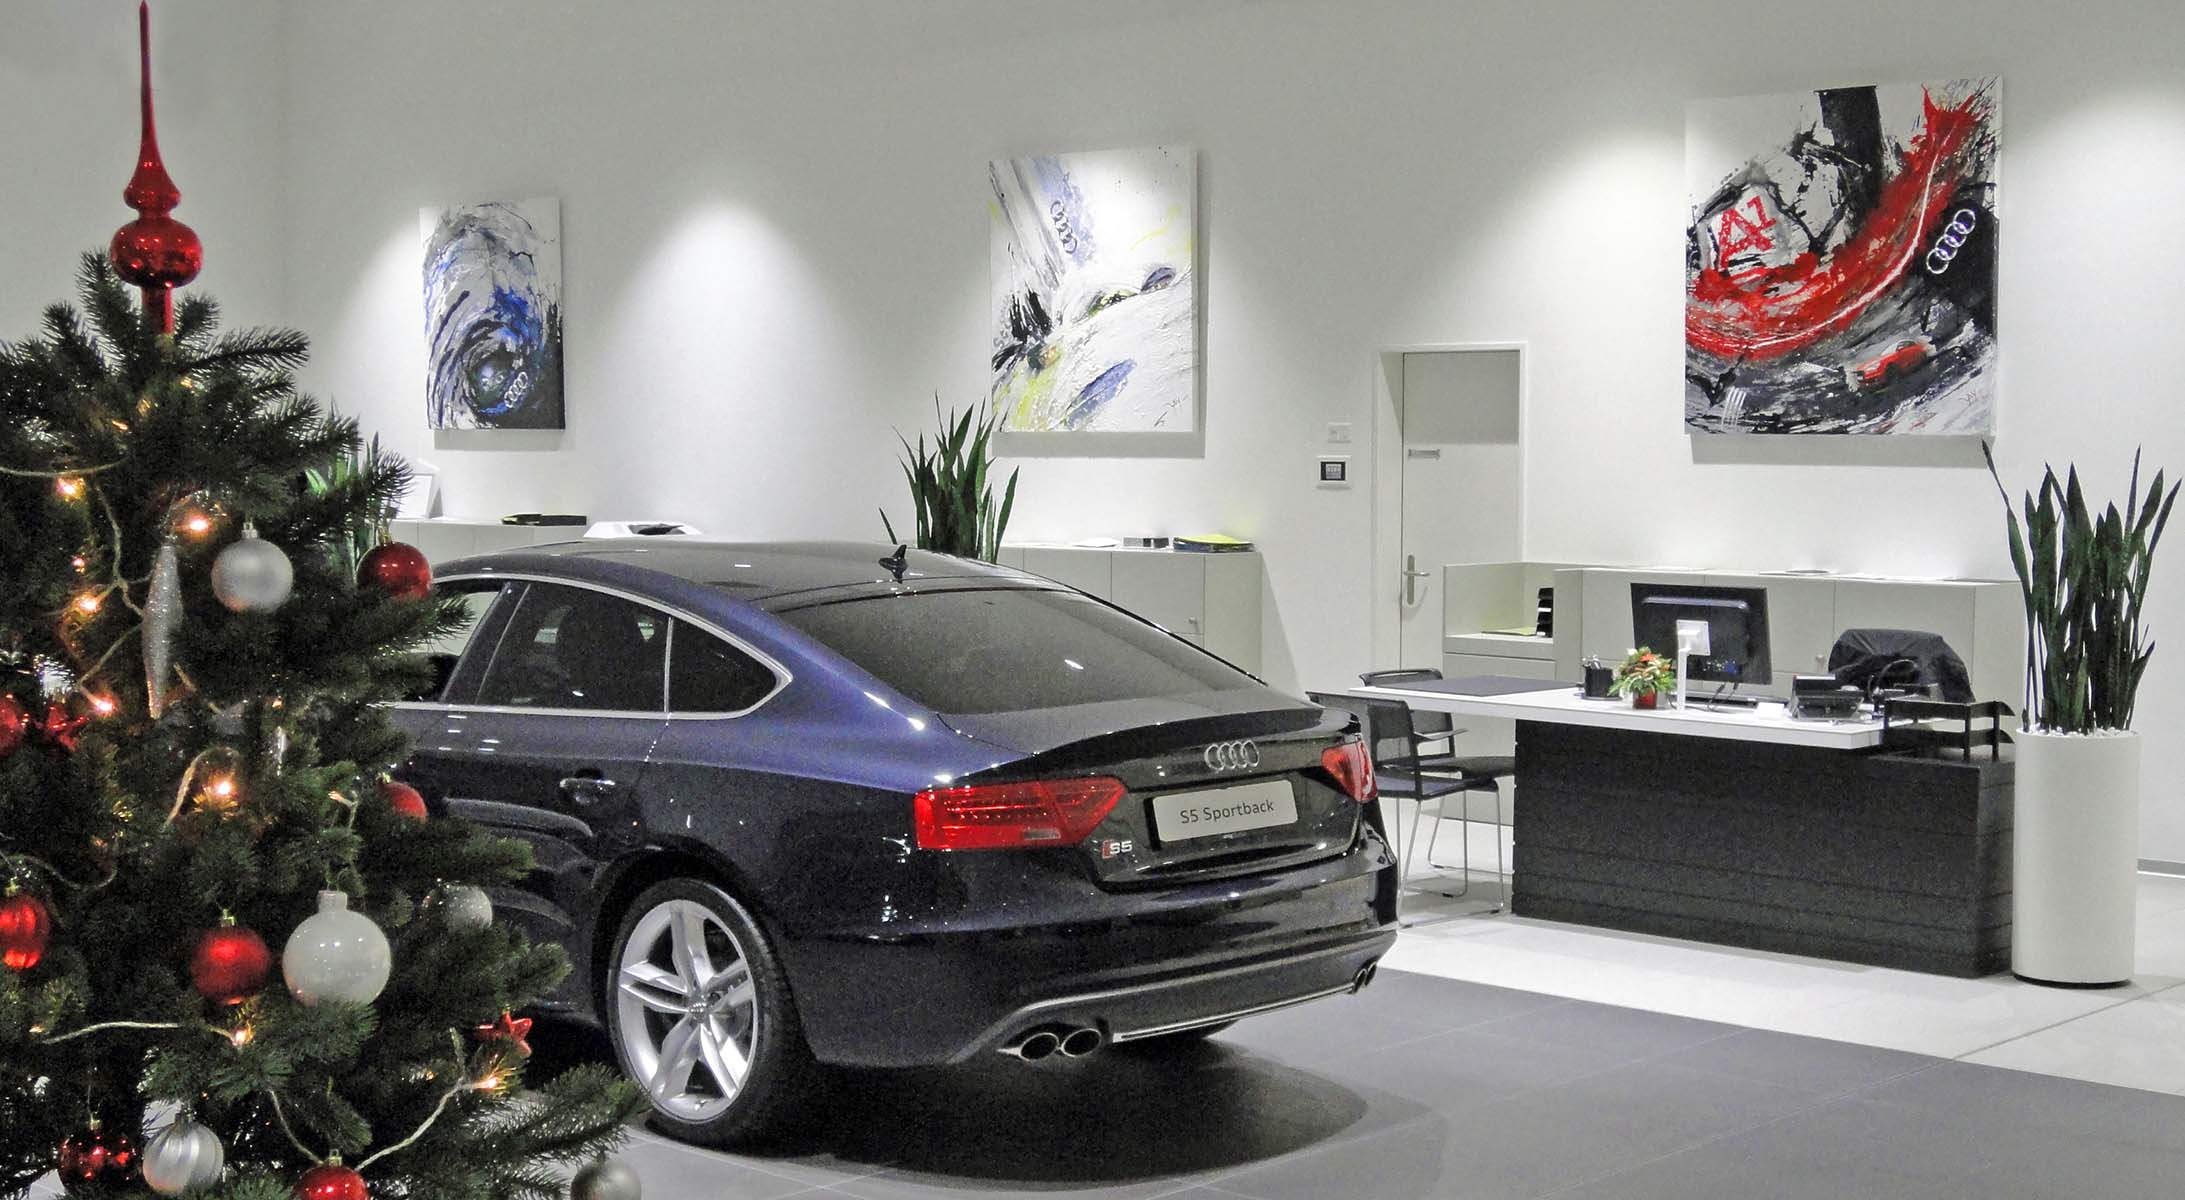 Acrylbilder 140 x 140 cm in Audi Ausstellung